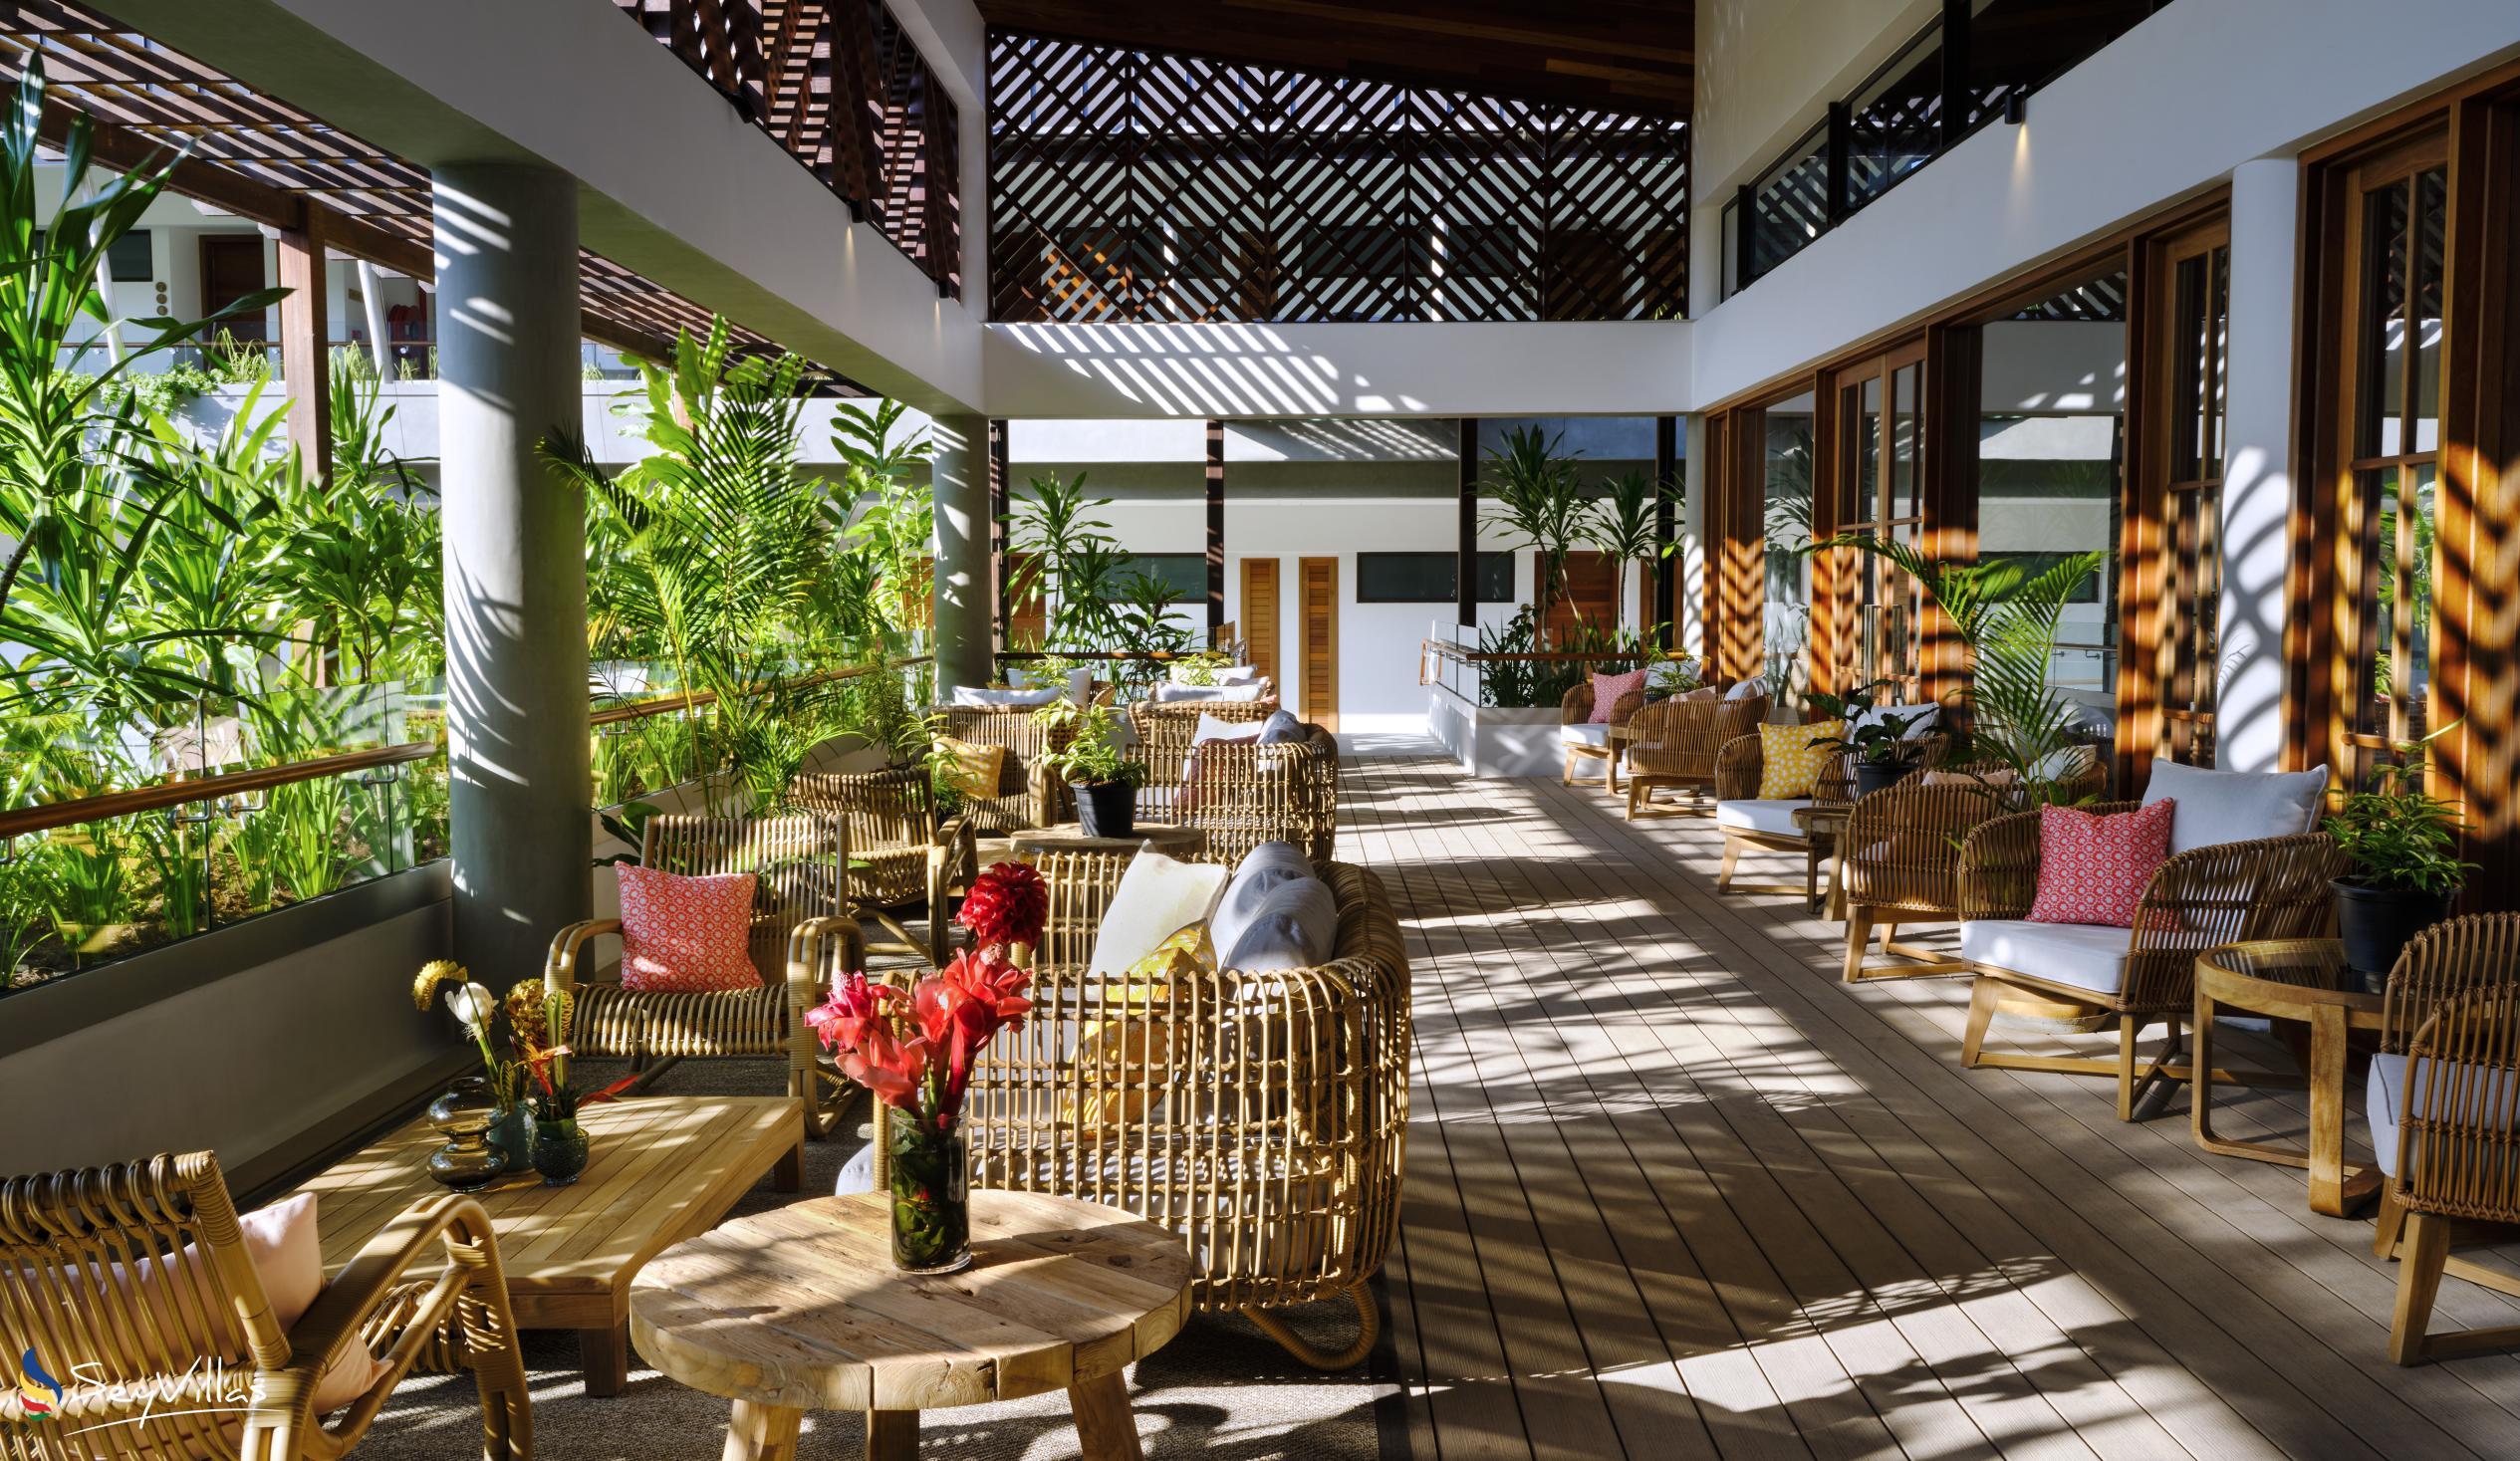 Foto 12: laila Resort - Intérieur - Mahé (Seychelles)